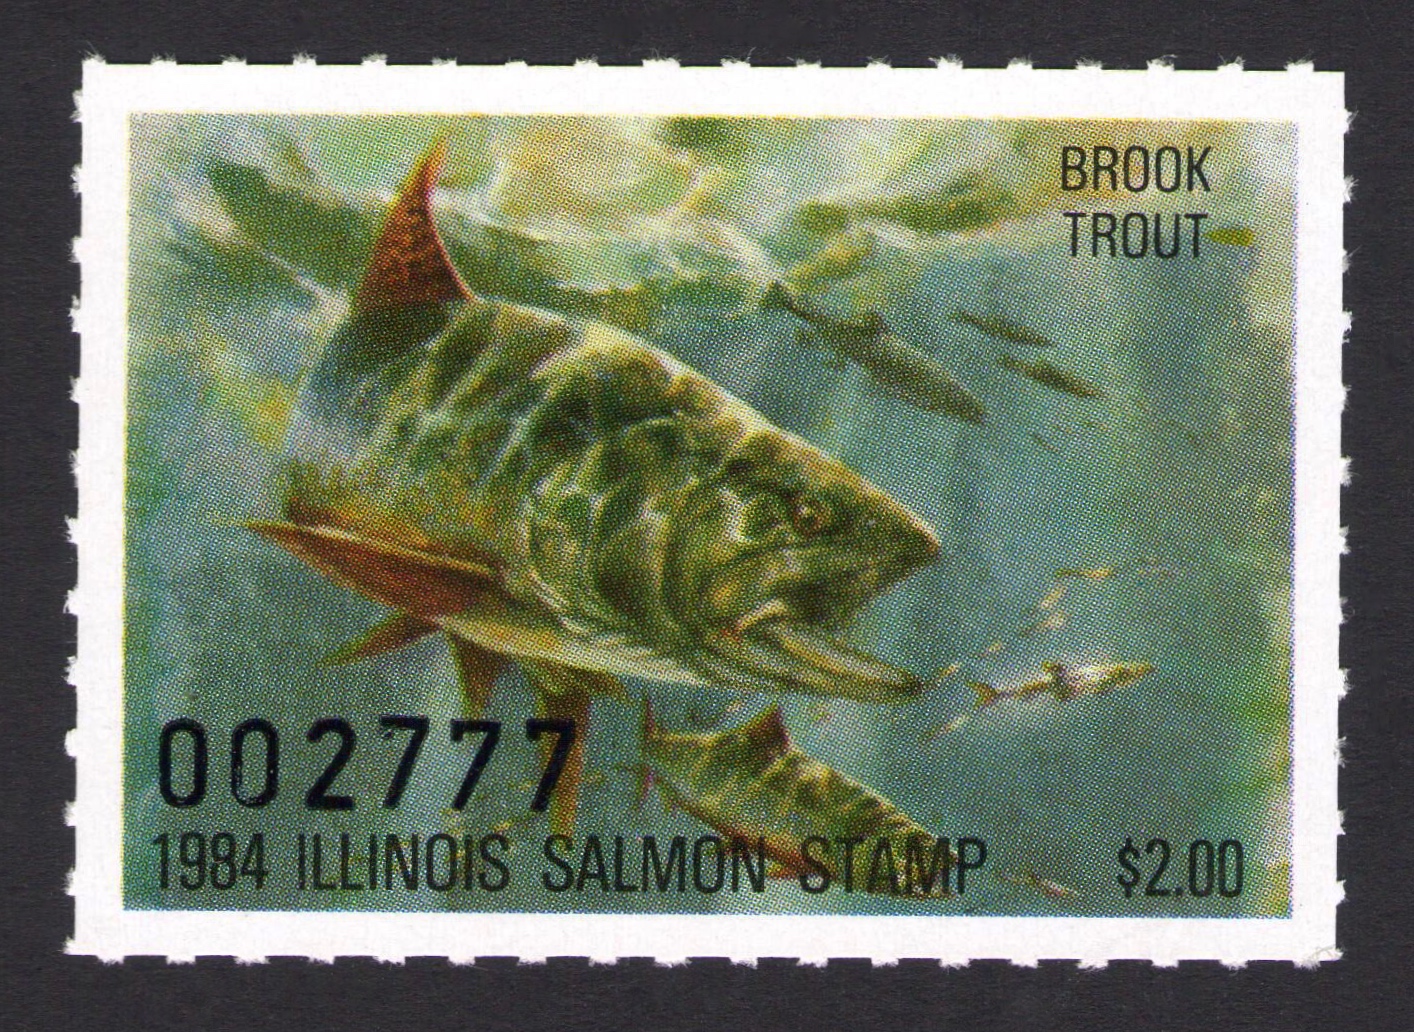 1984 Illinois Salmon